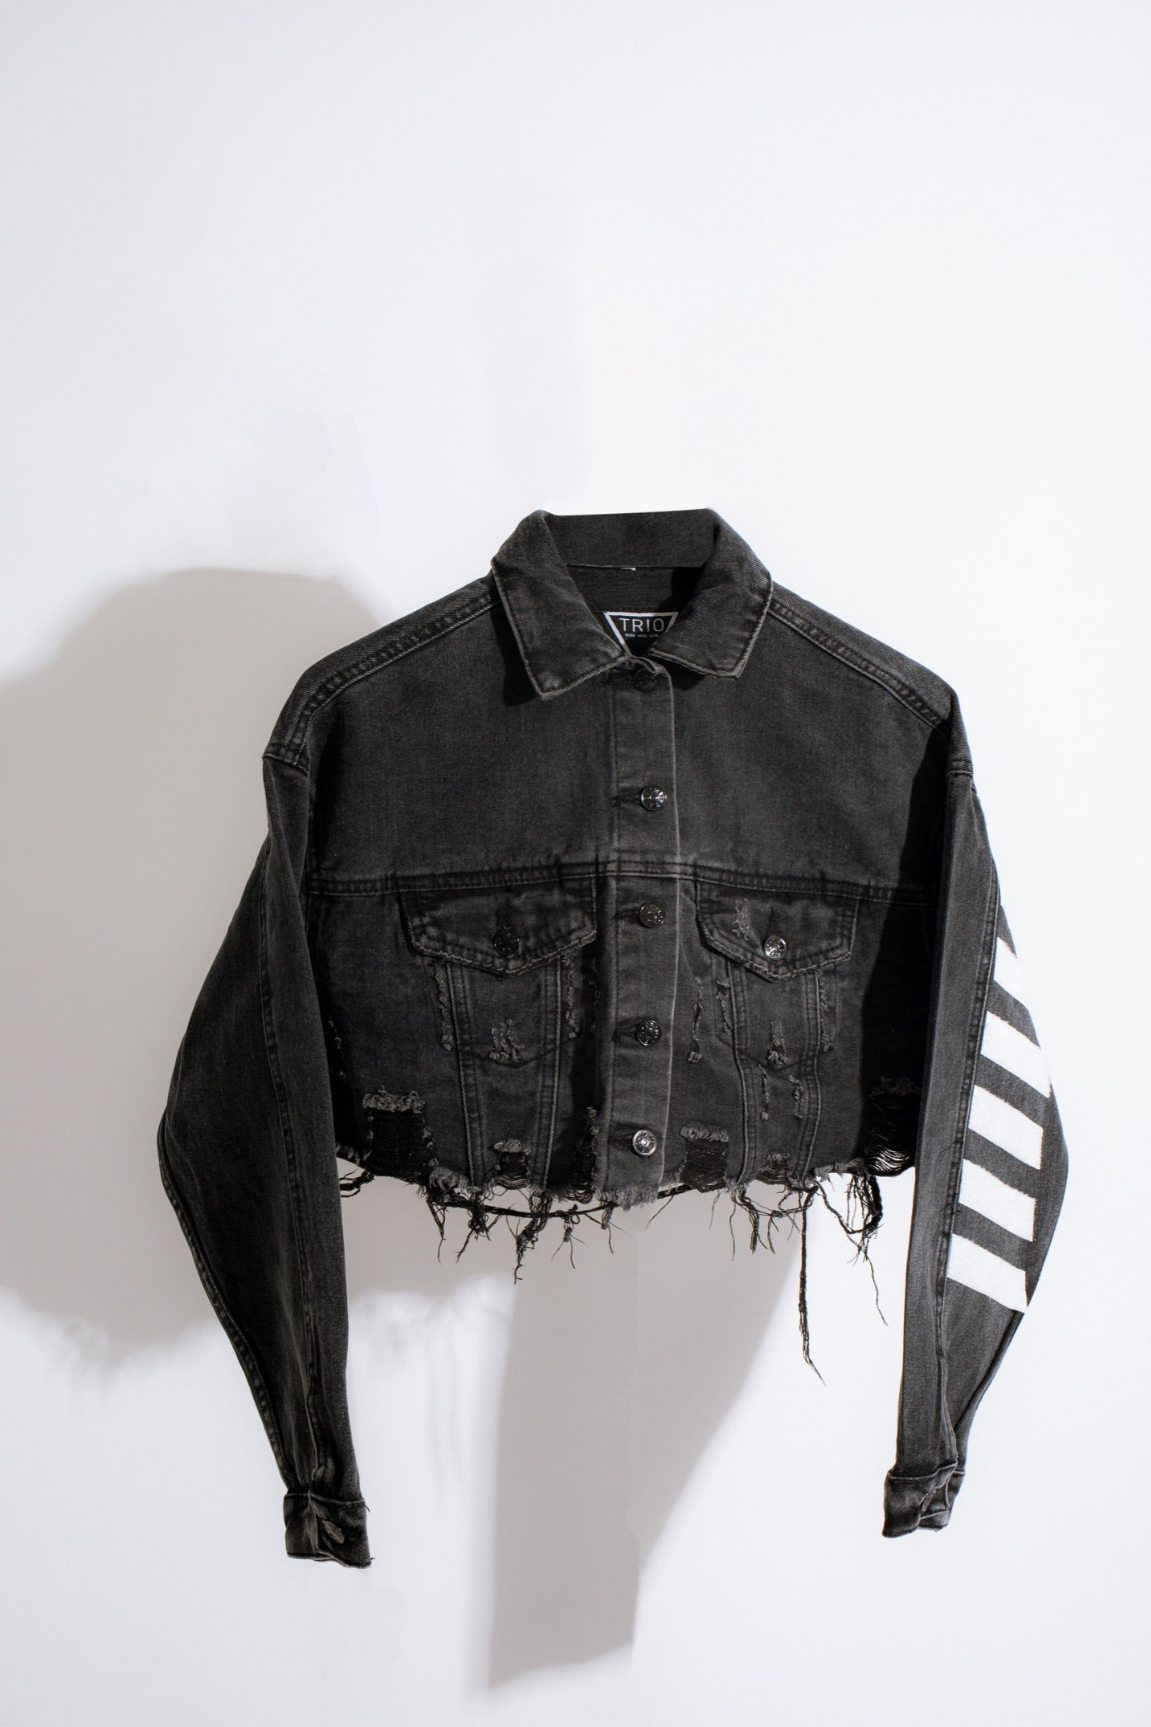 Clout Crop Jacket (Black)